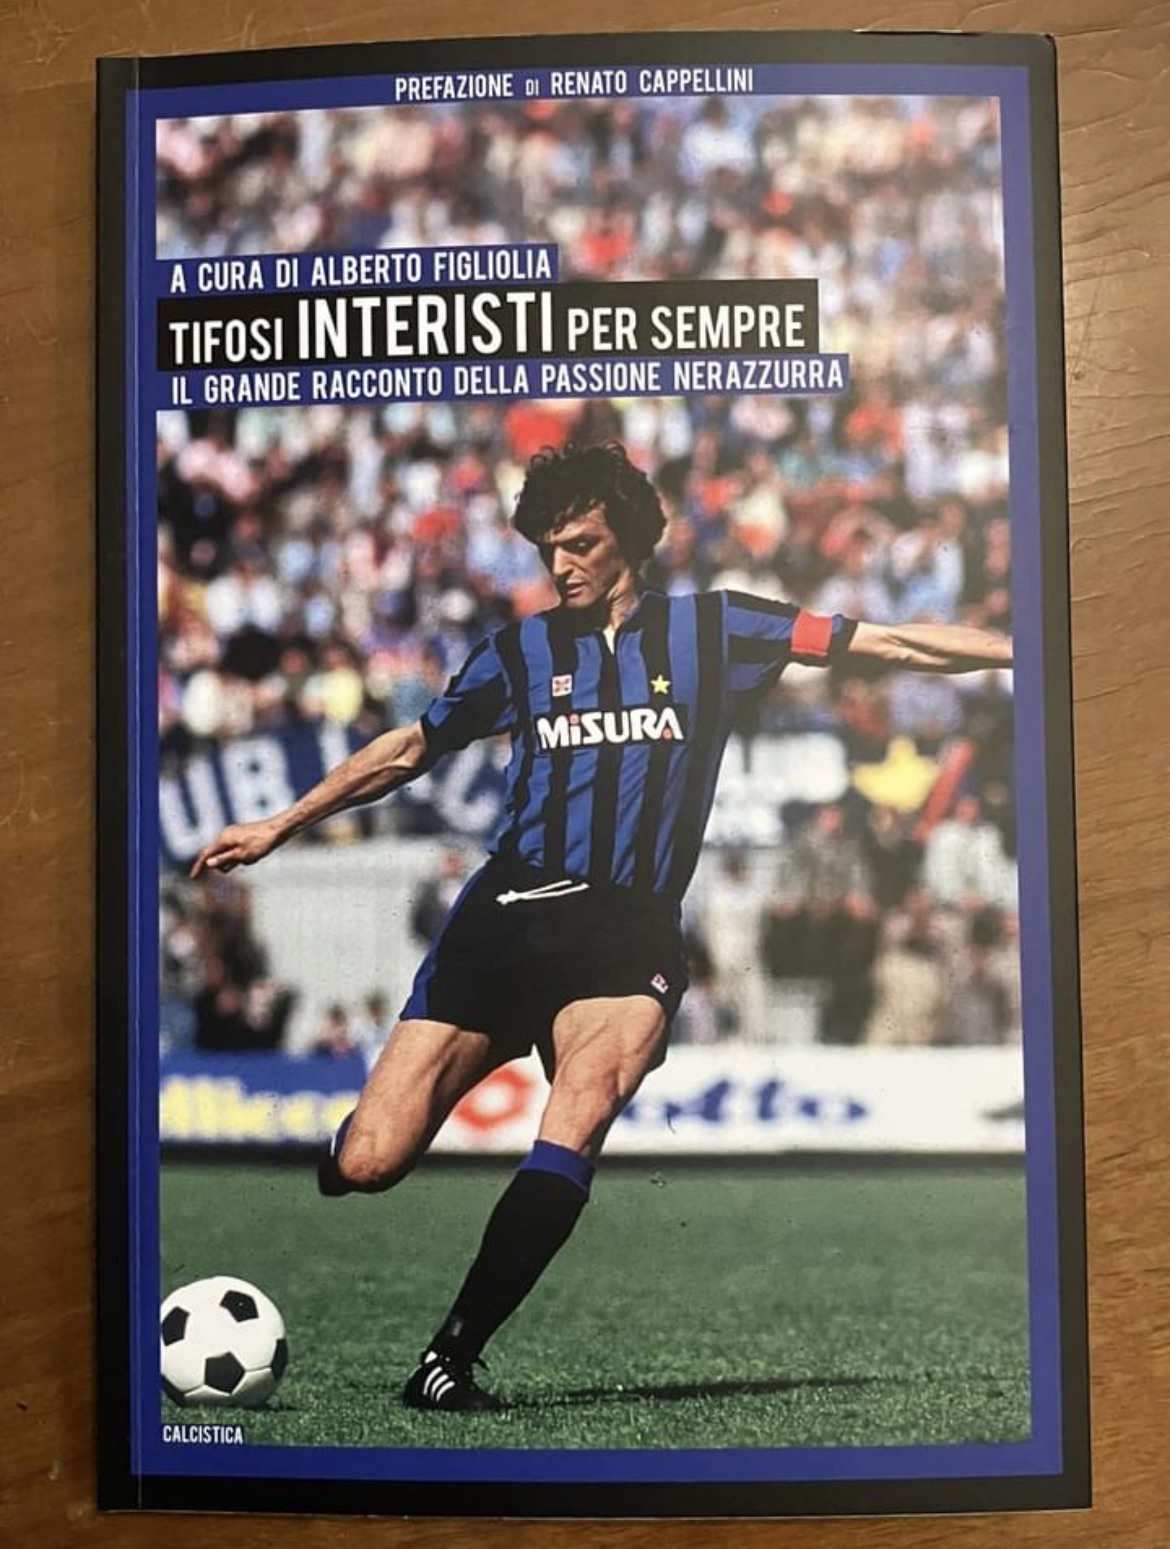 Tifosi Interisti per sempre: il nuovo libro sulla storia dell’Inter, un po’ soncinese con la prefazione di Renato Cappellini da Soncino…